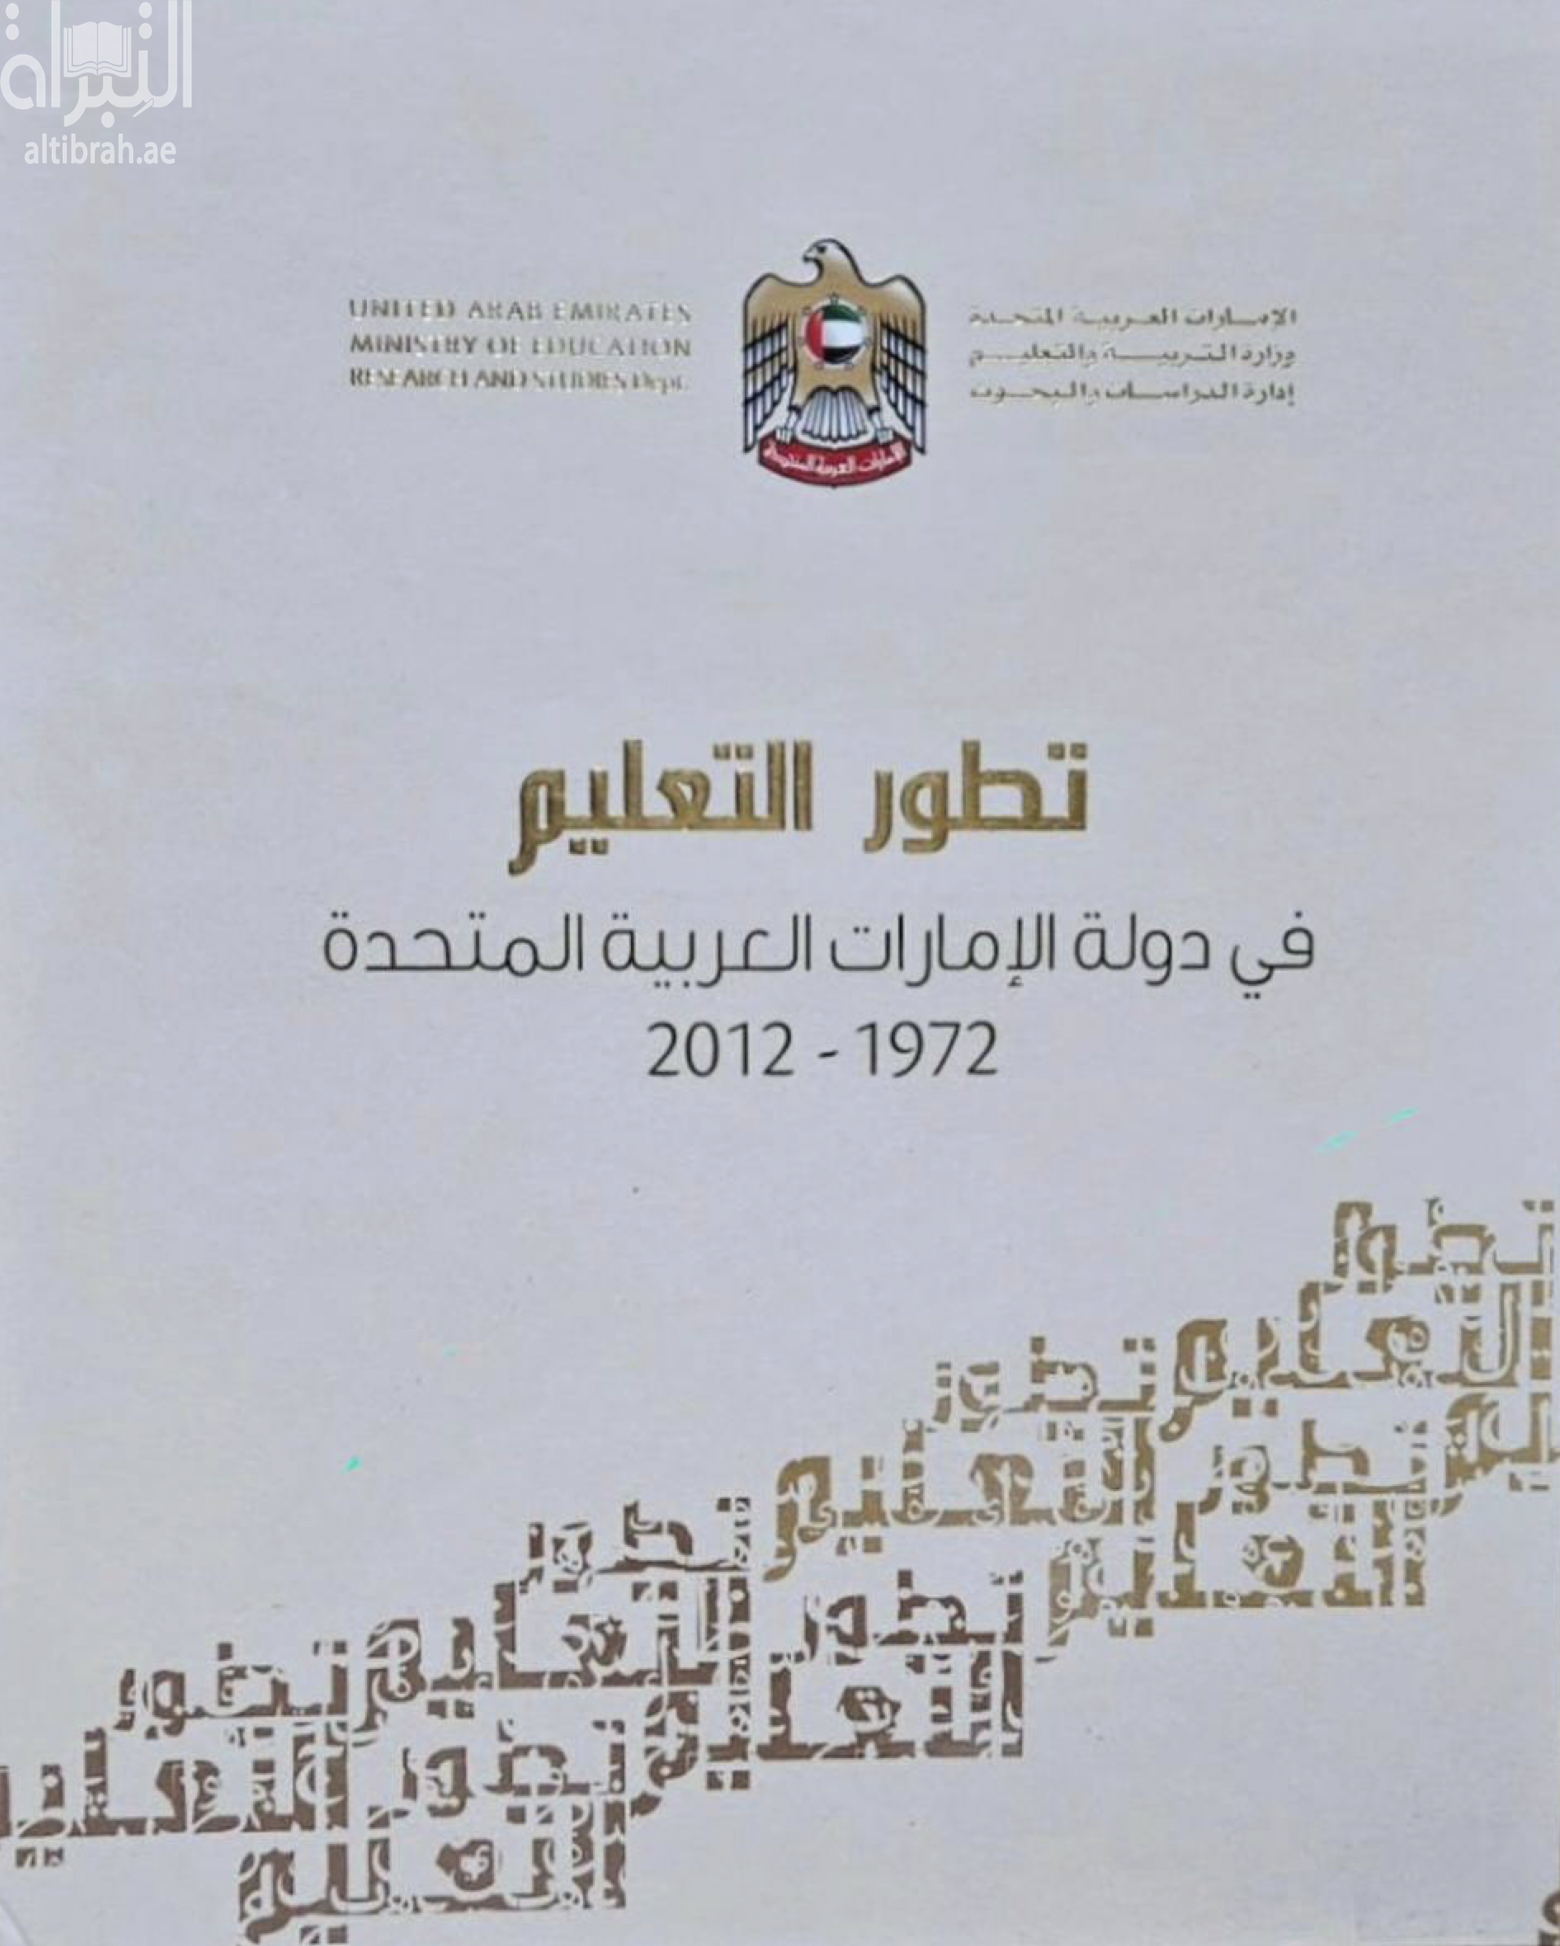 تطور التعليم في دولة الإمارات العربية المتحدة 1972 - 2012